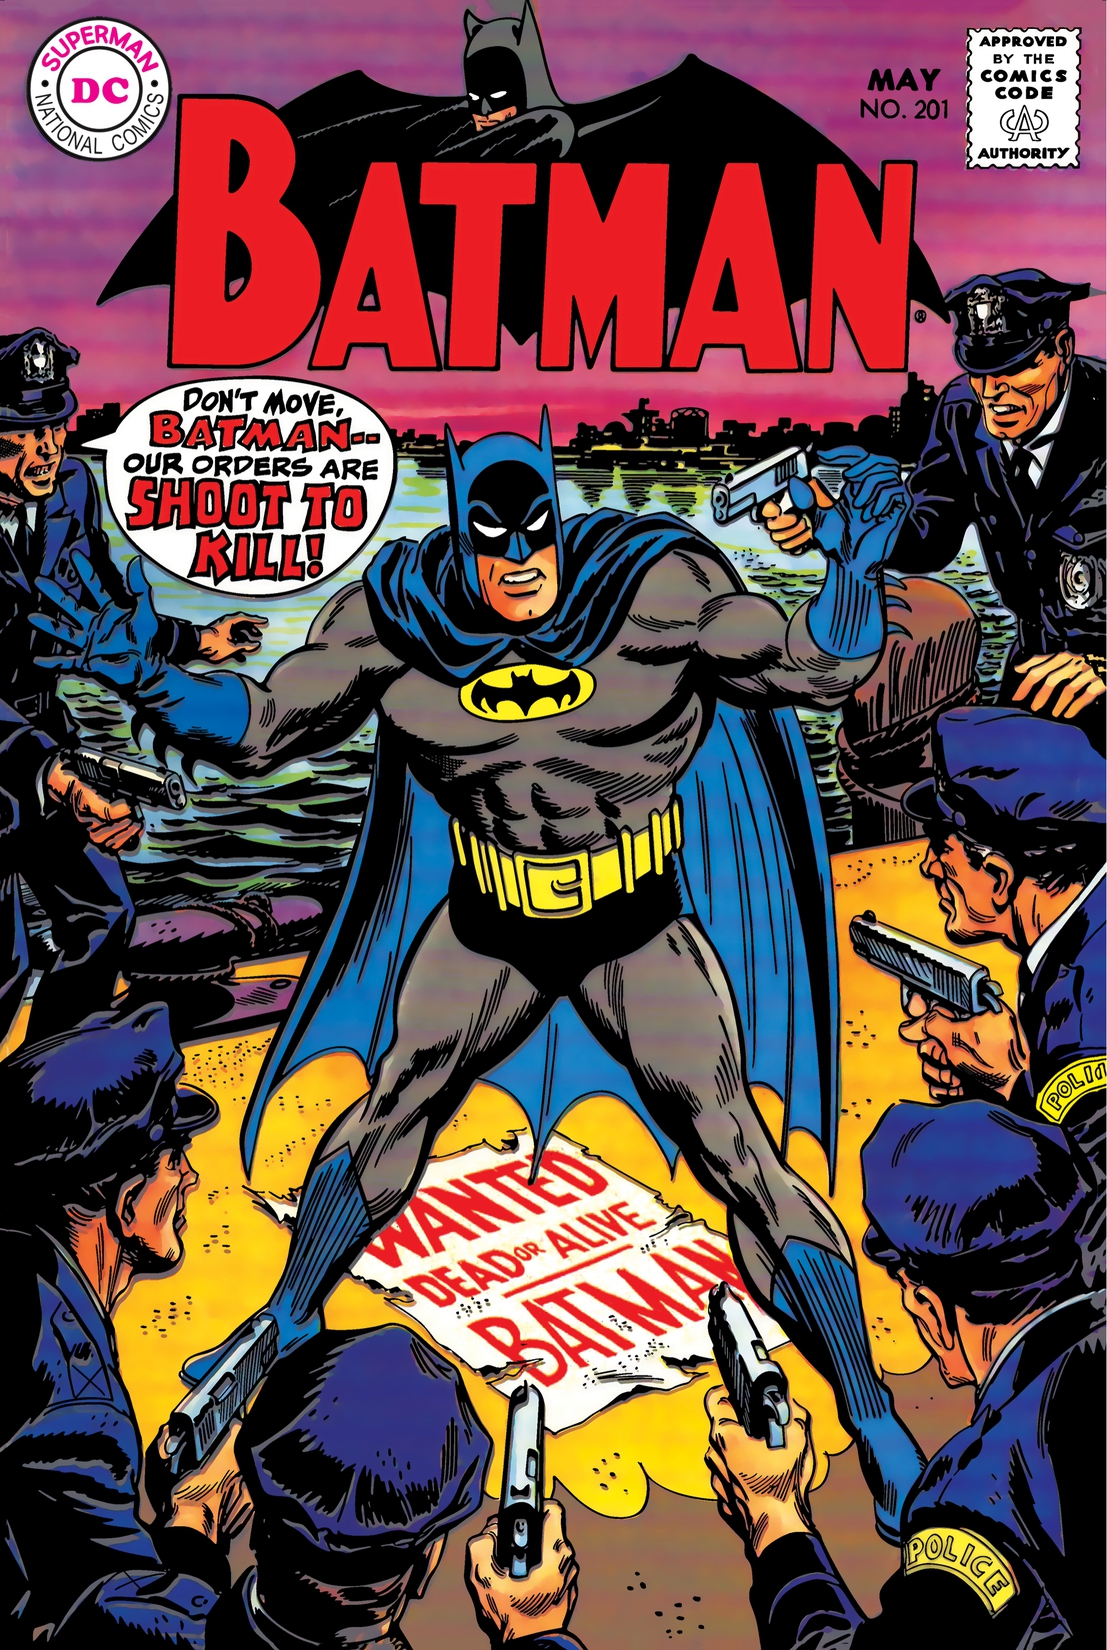 Batman (1940-) #201 preview images